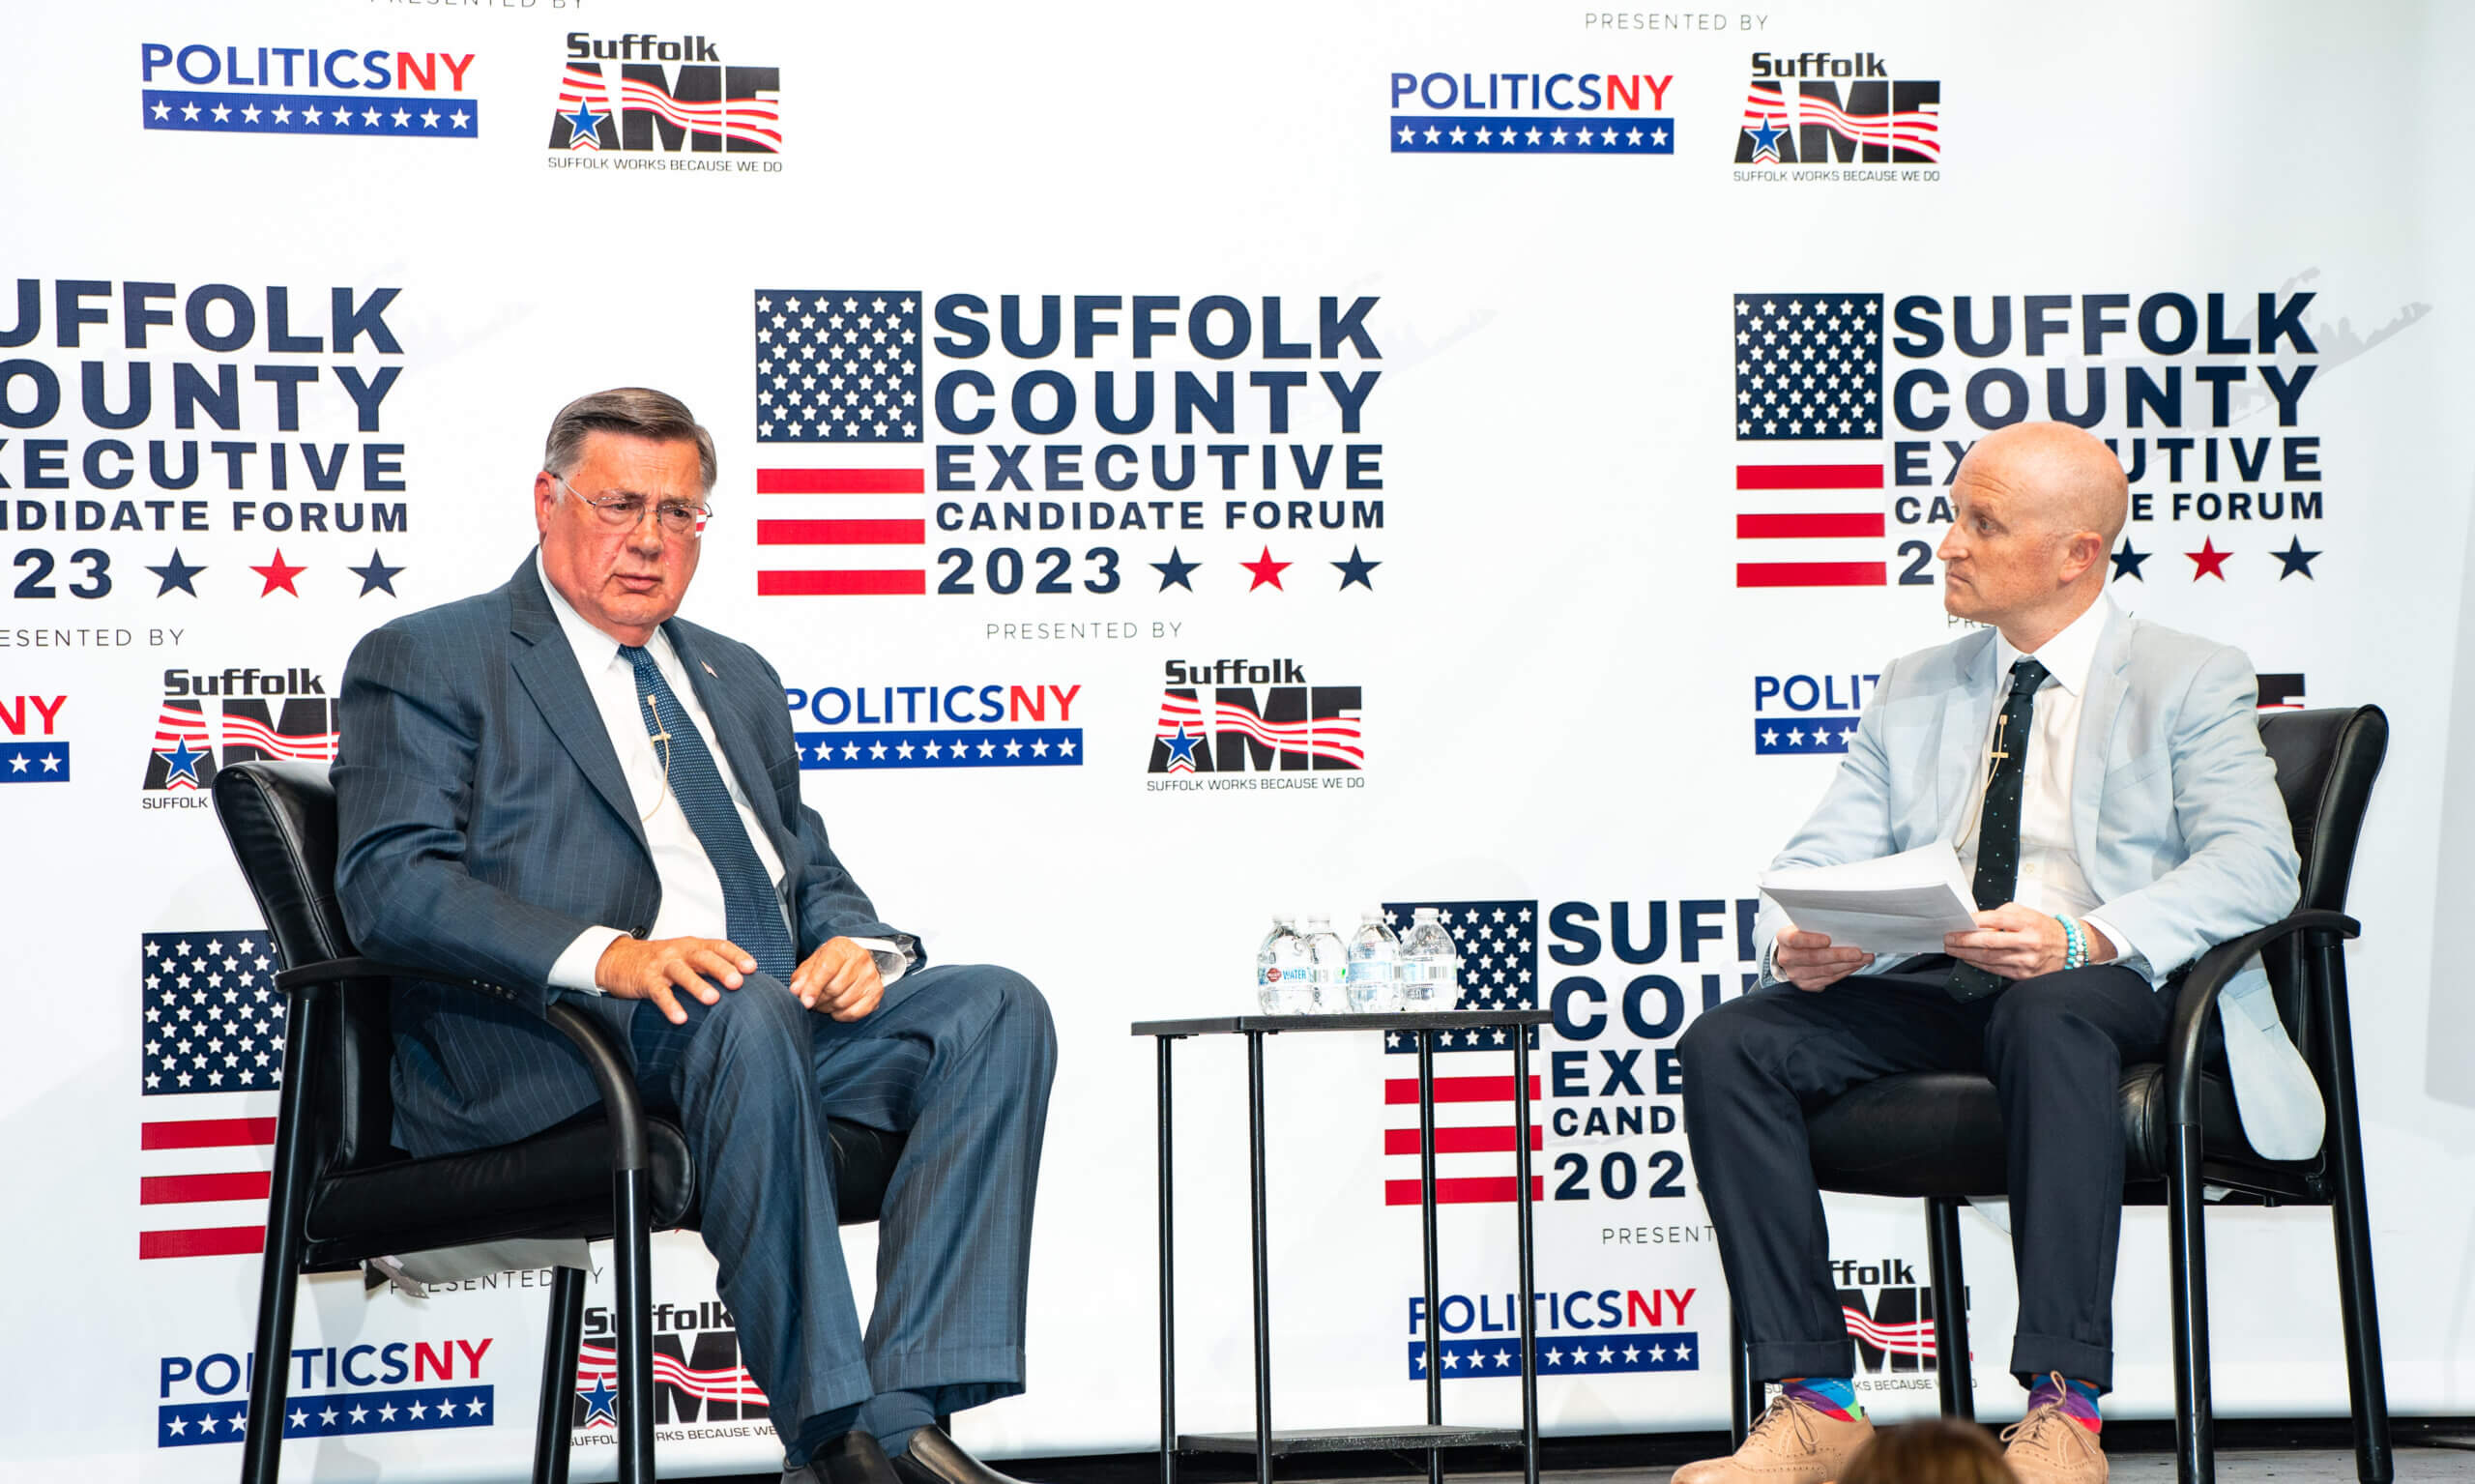 Foro de candidatos: Condado de Suffolk en busca de un nuevo Ejecutivo